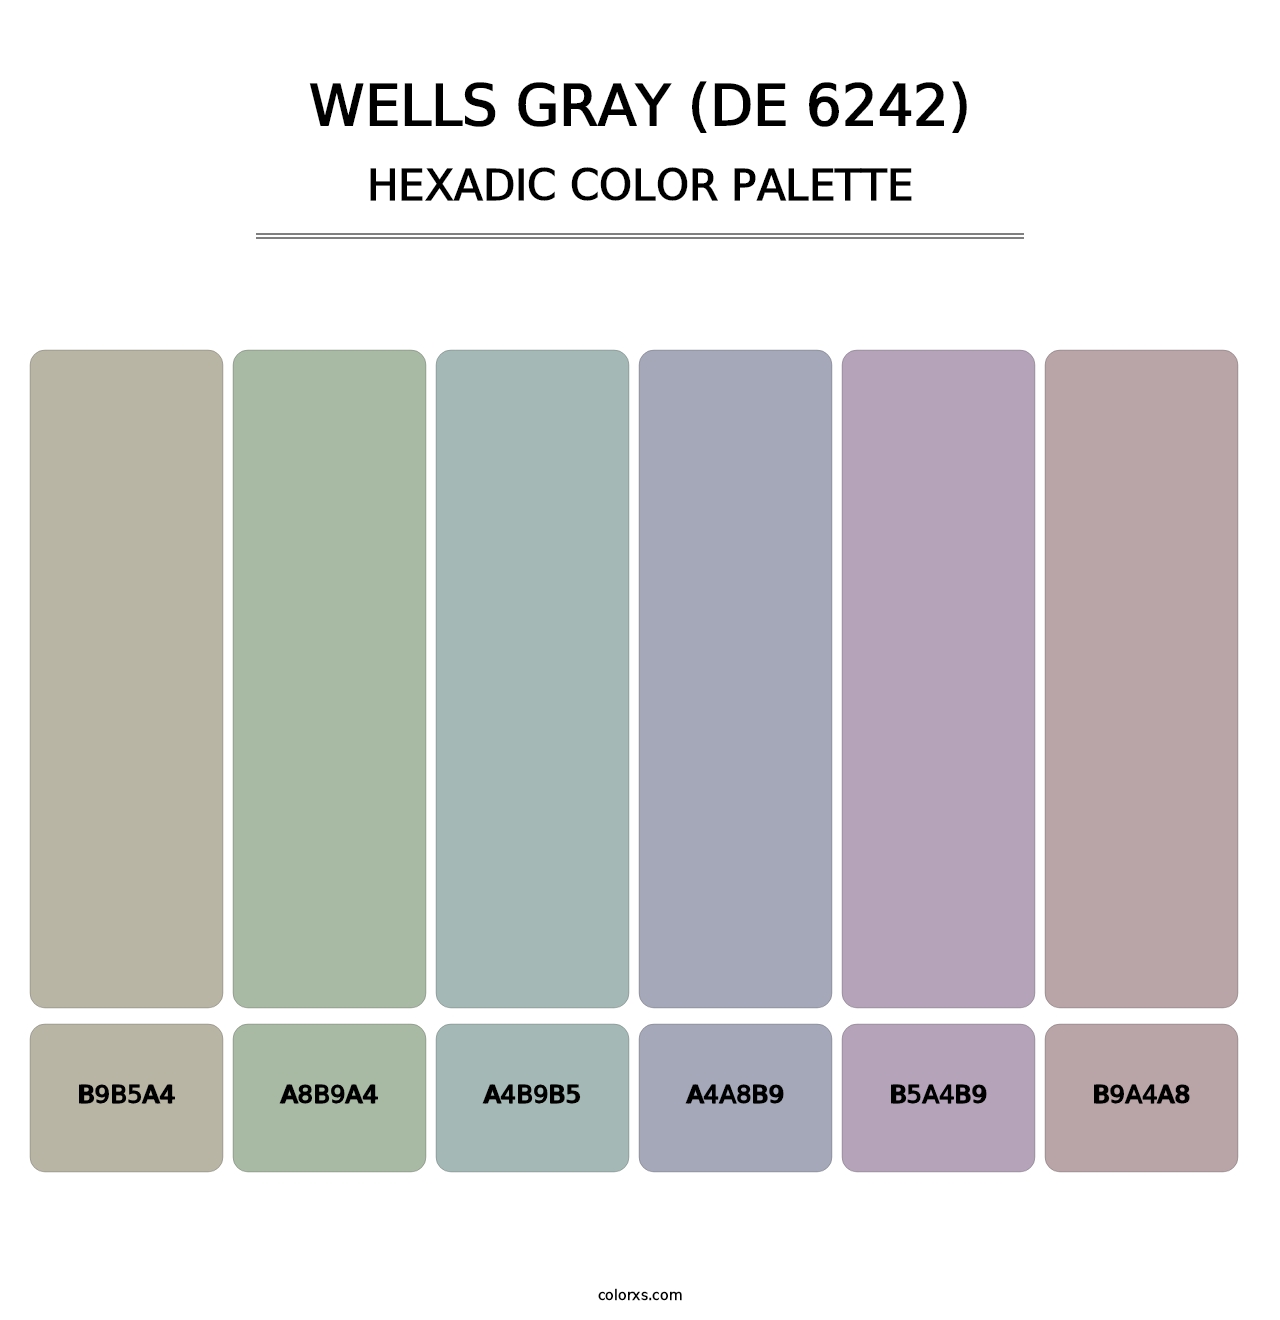 Wells Gray (DE 6242) - Hexadic Color Palette